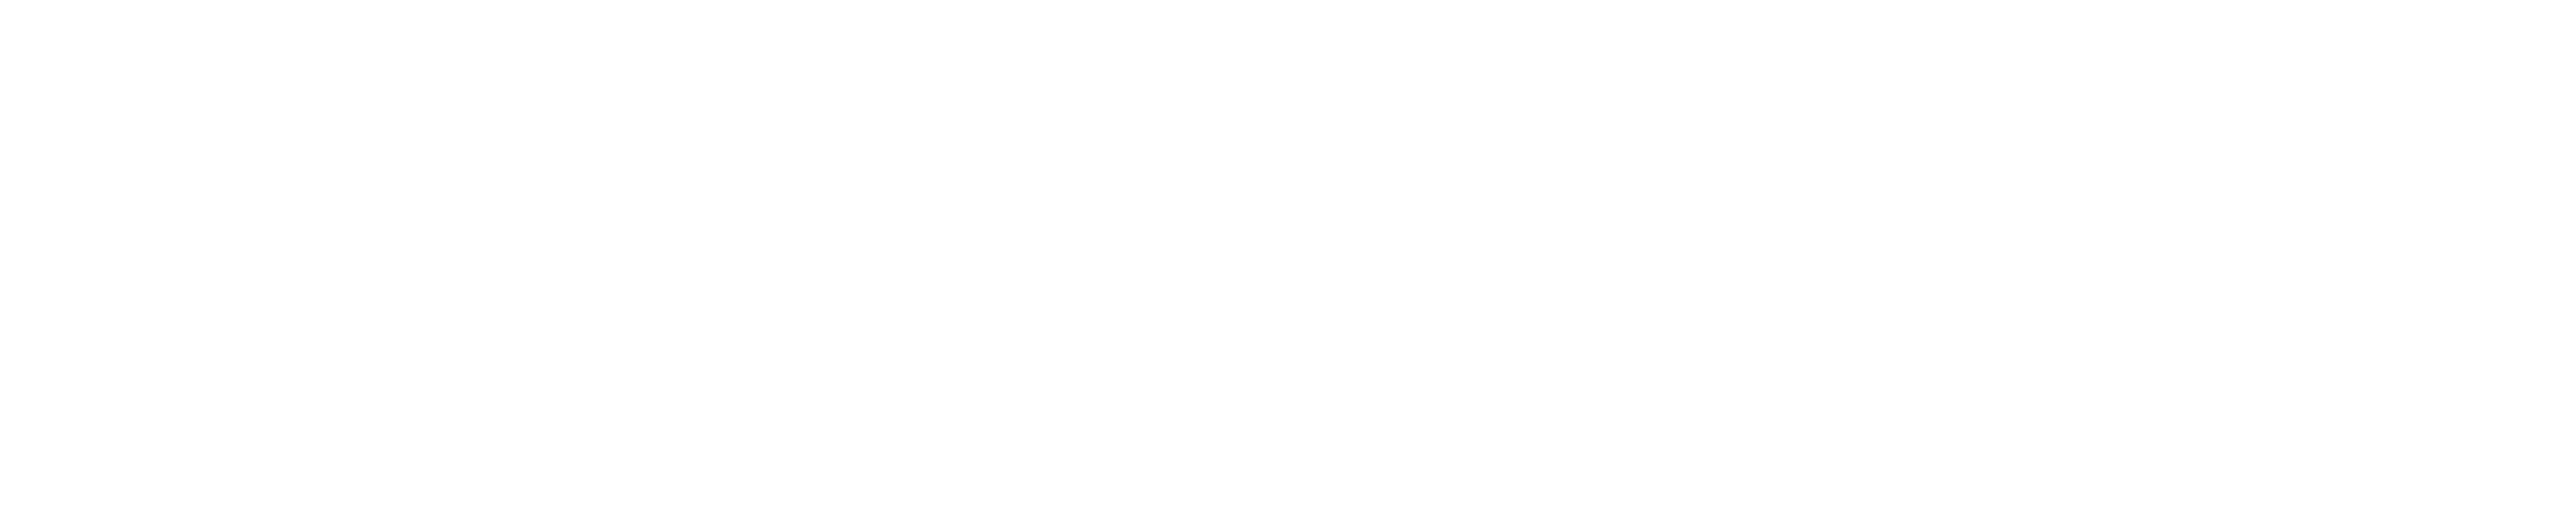 Lake Windermere logo